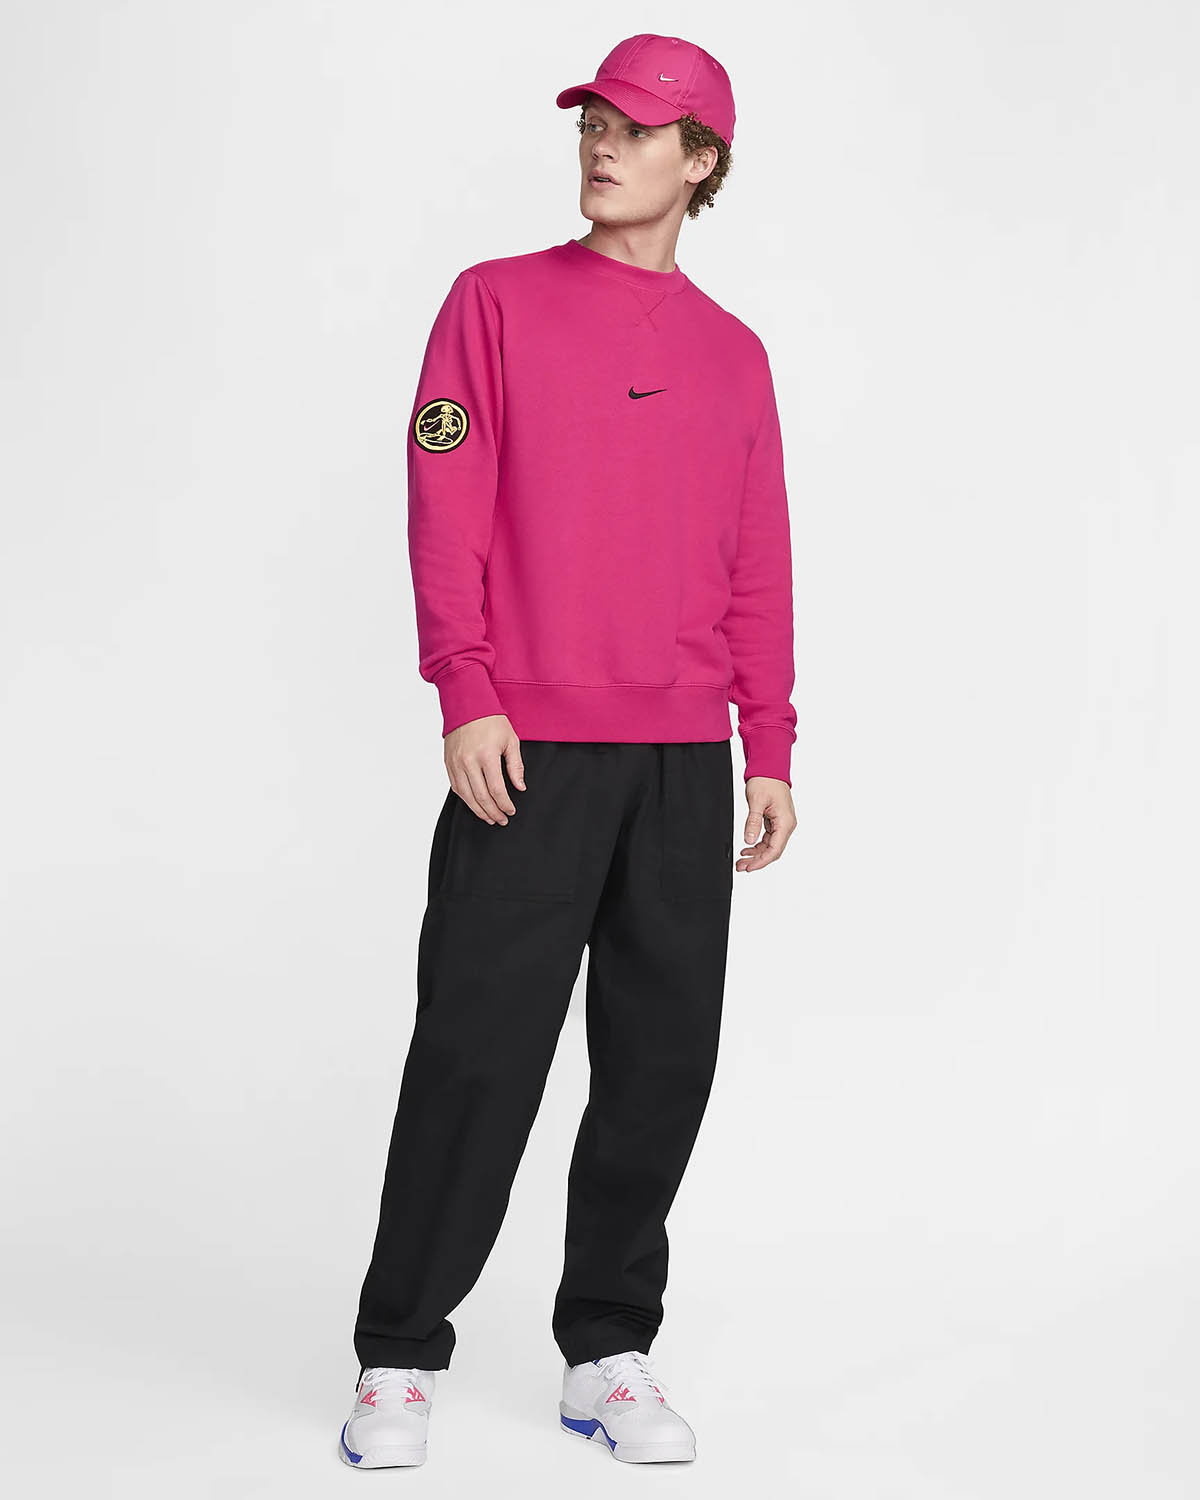 Nike Sportswear Club Fleece Surf Skate Sweatshirt Fireberry Pink Outfit